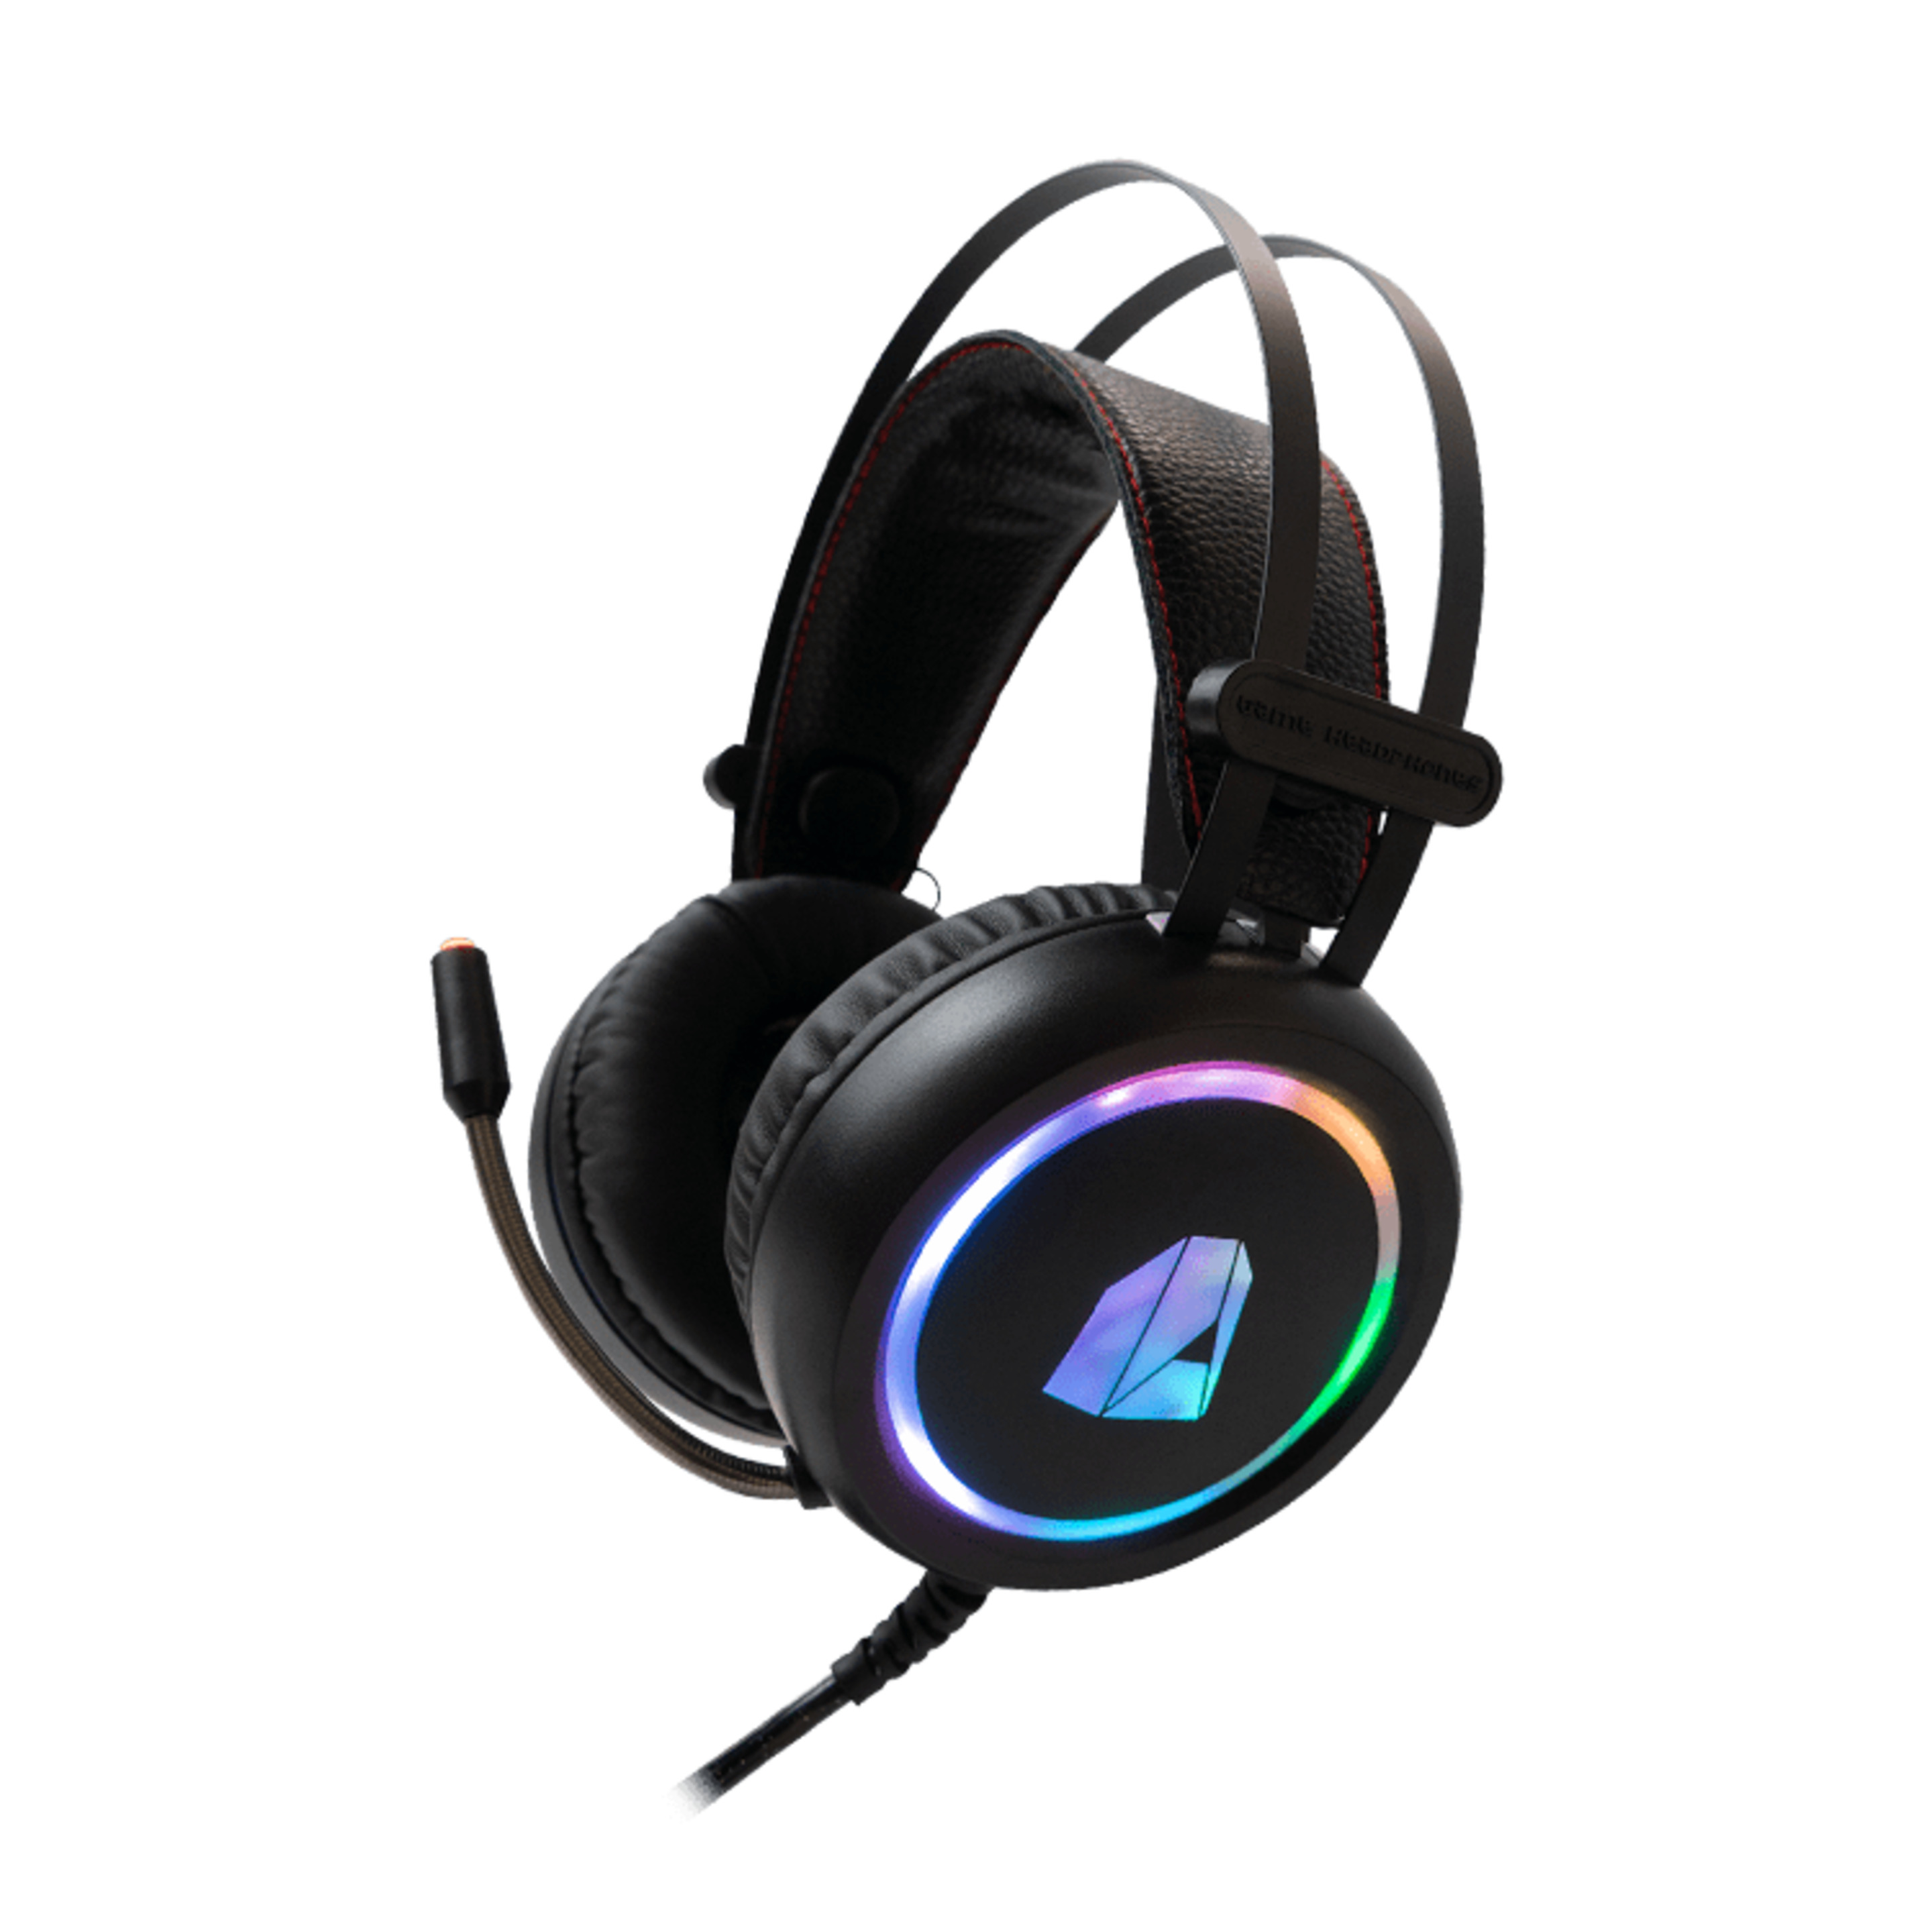 Headset Gaming Nitropc Nh10 Para Juegos Y Escuchar Música En Pc Con Iluminación Rgb Personalizable - negro - 